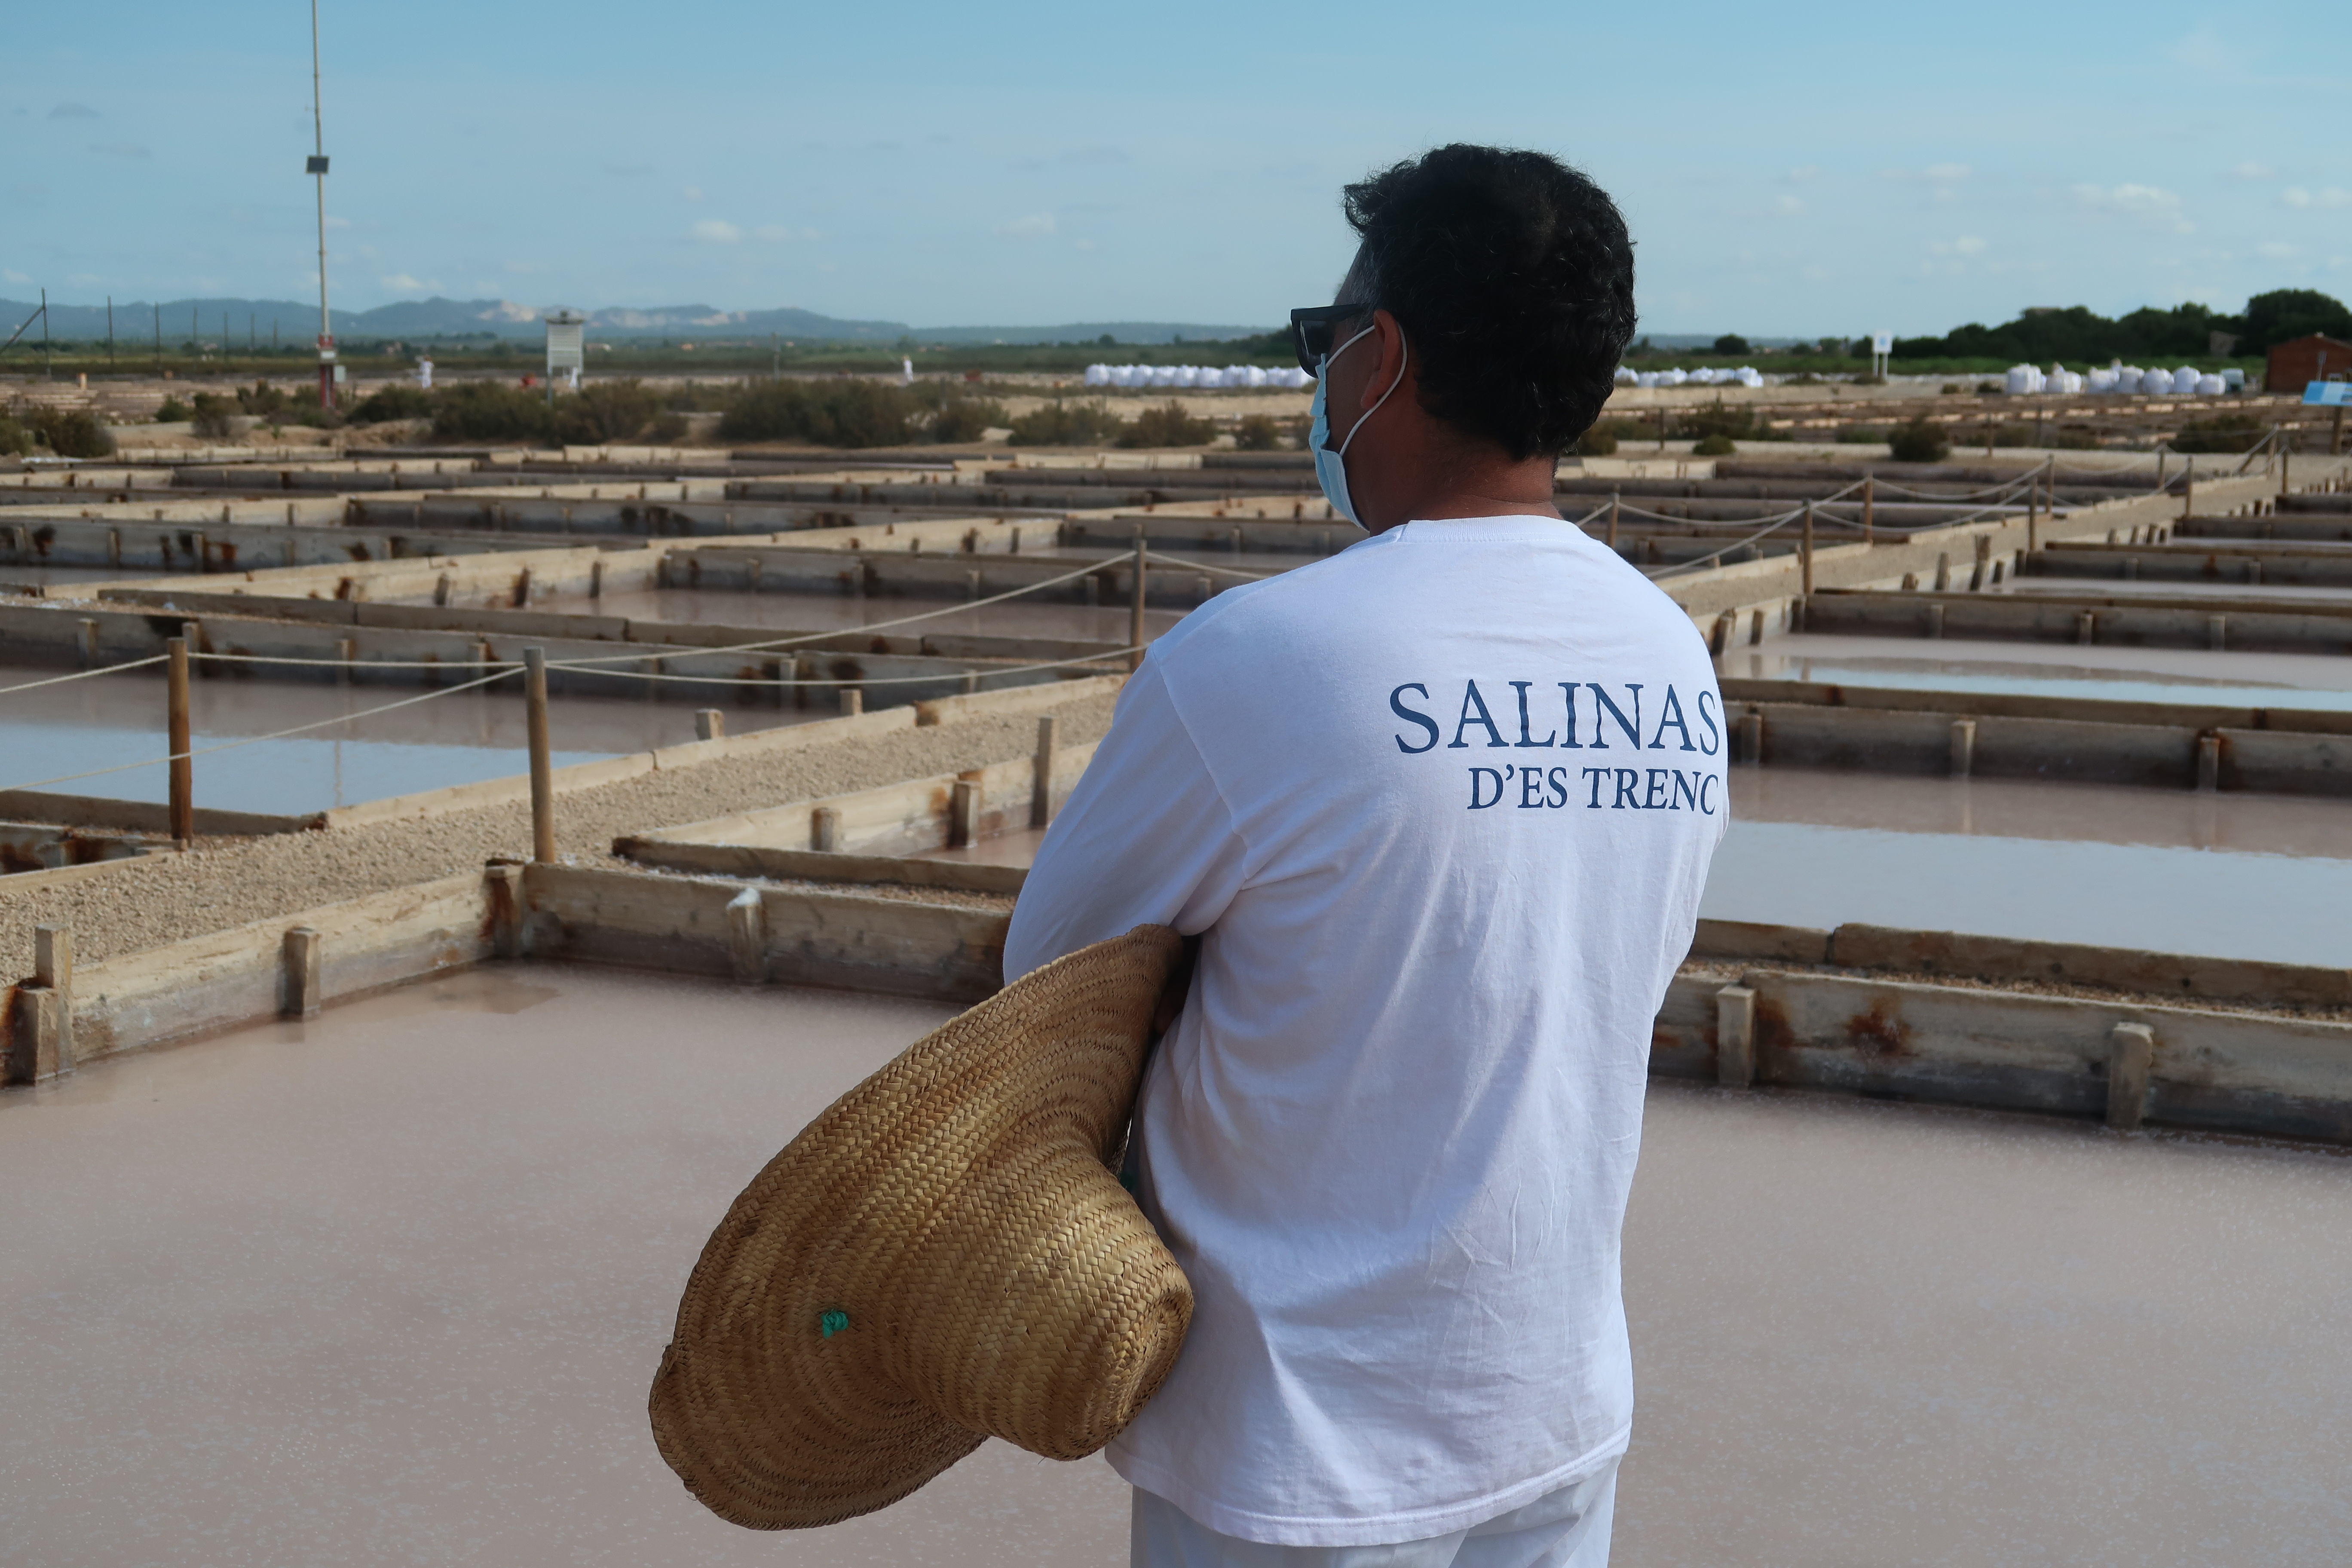 El Consell de Mallorca ha treballat intensament perquè els professionals saliners i els seus productes també puguin optar als certificats artesans a partir de l’any que ve. 